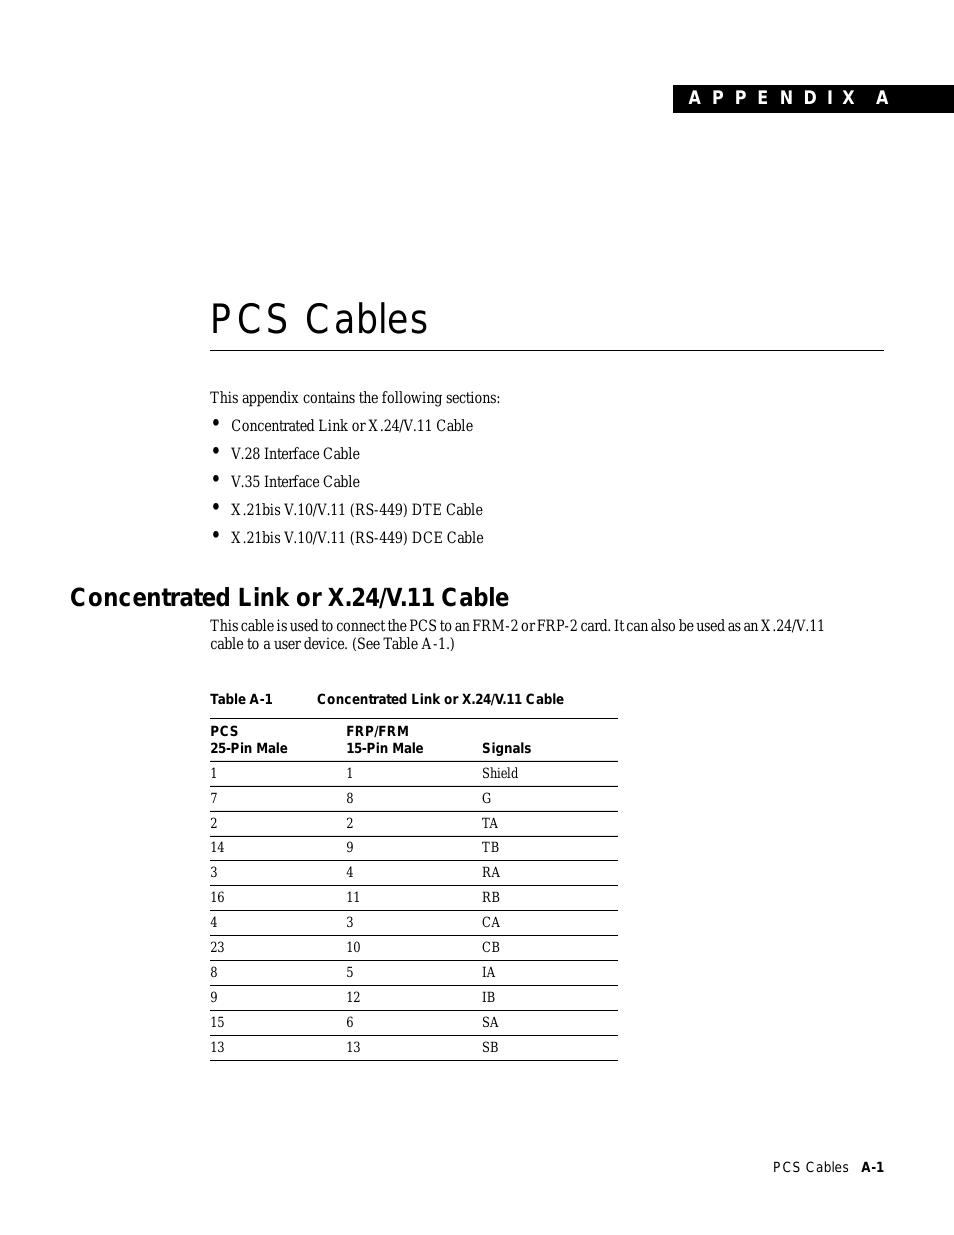 PCS Cable